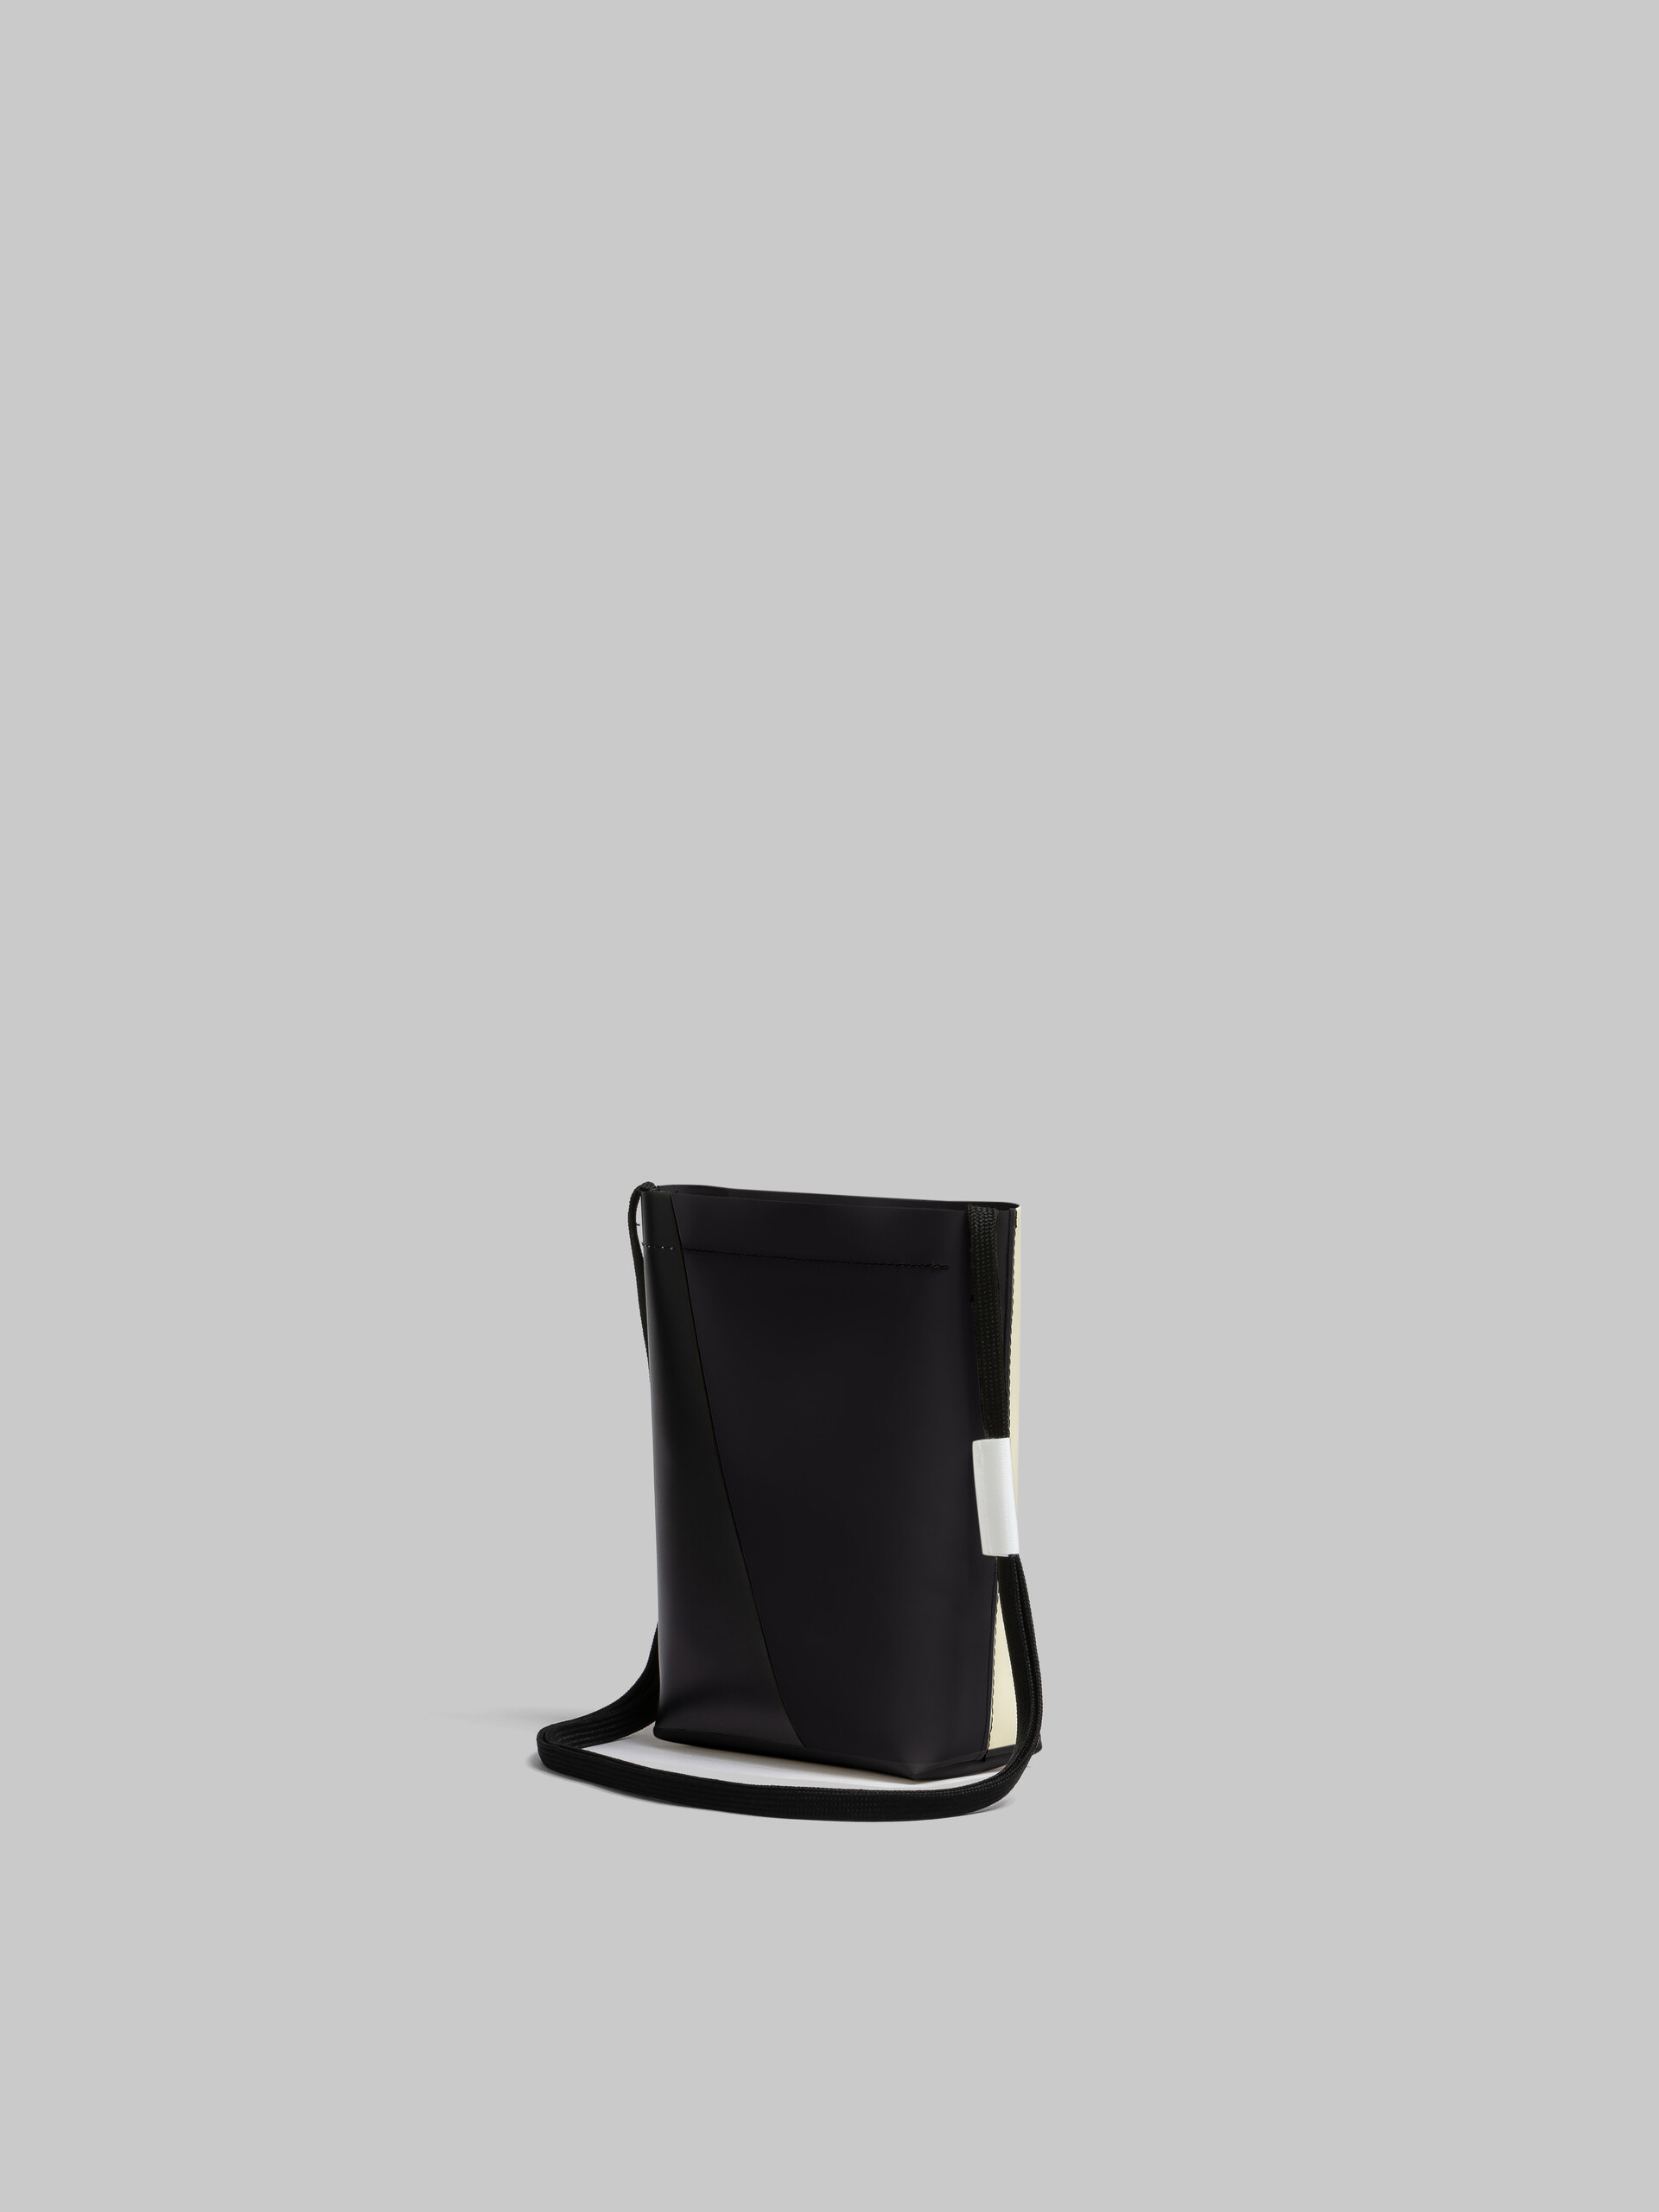 Tracolla Tribeca bianca e nera con stringa da scarpe - Borse a spalla - Image 3